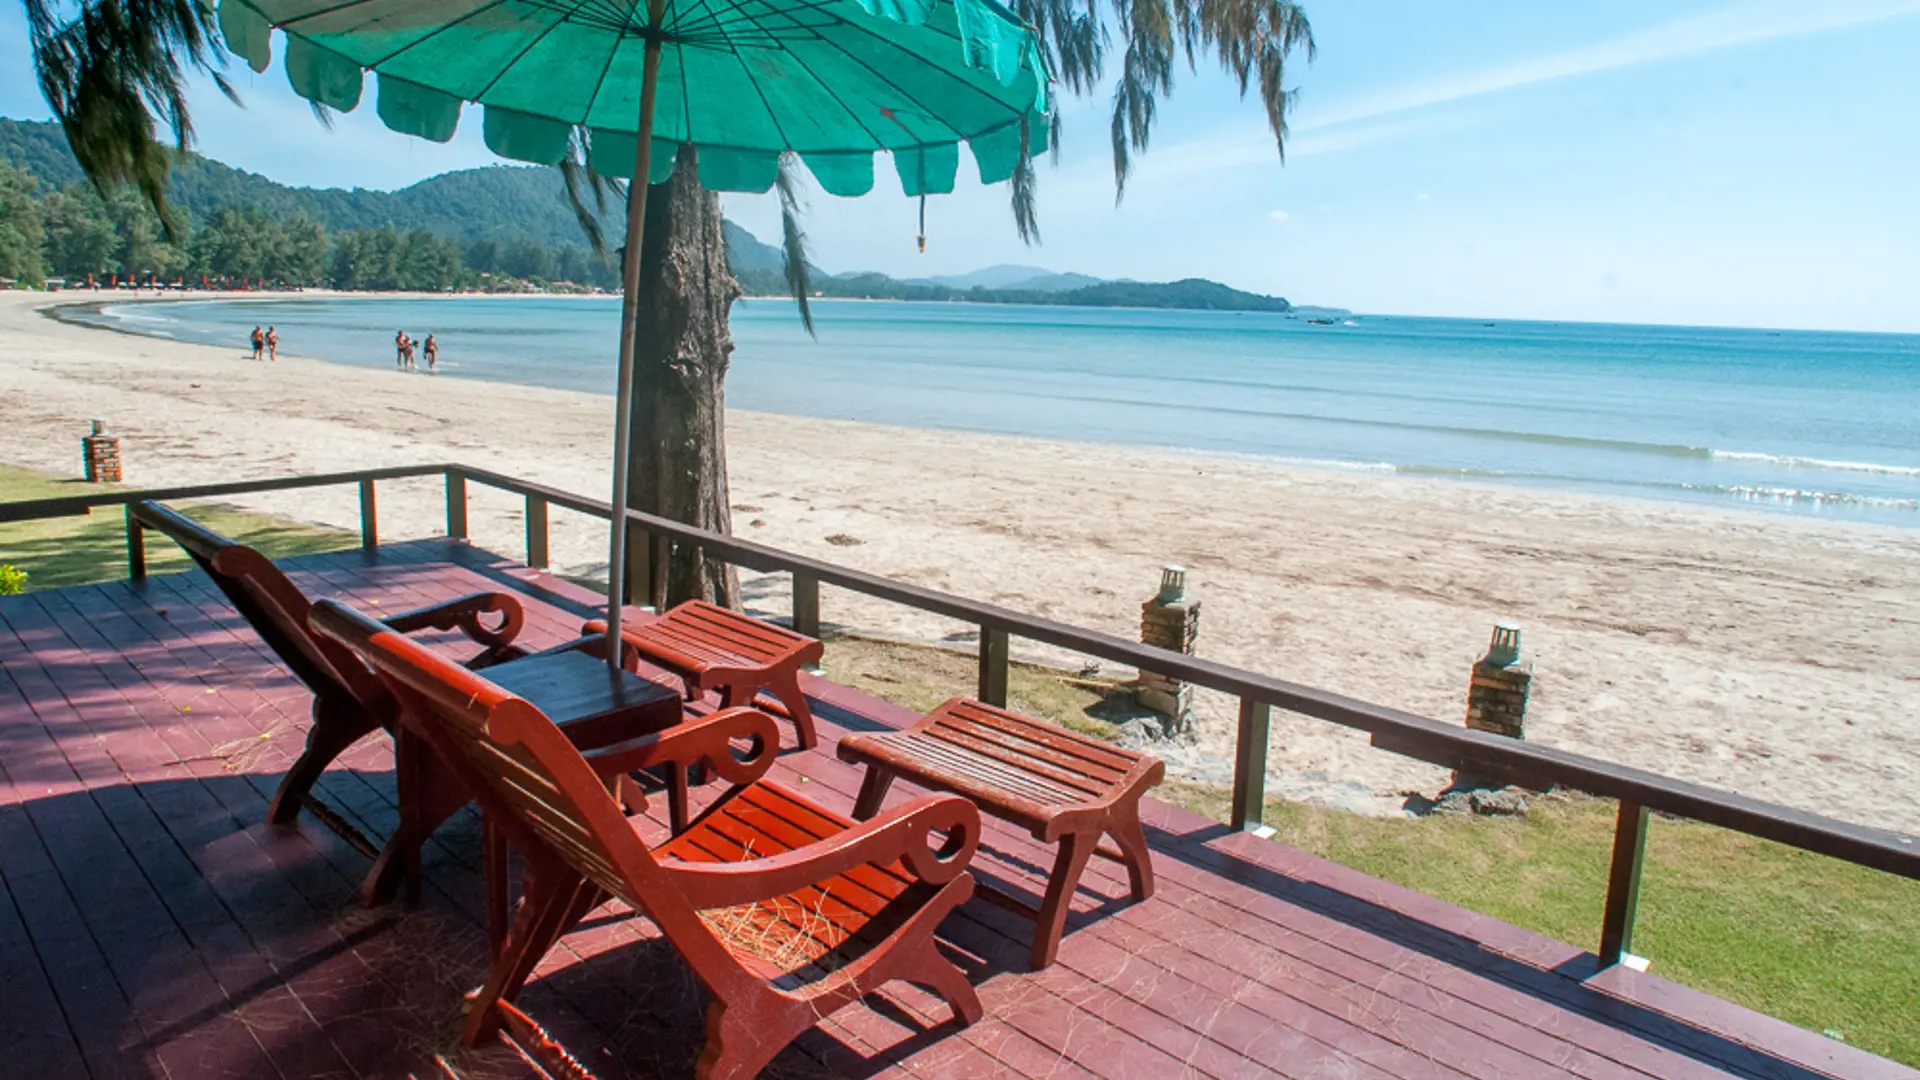 TWIN BAY RESORT - Et enkelt og hyggeligt resort på Koh Lanta med en formidabel beliggenhed ned til øens bedste strand, Check Point Travel